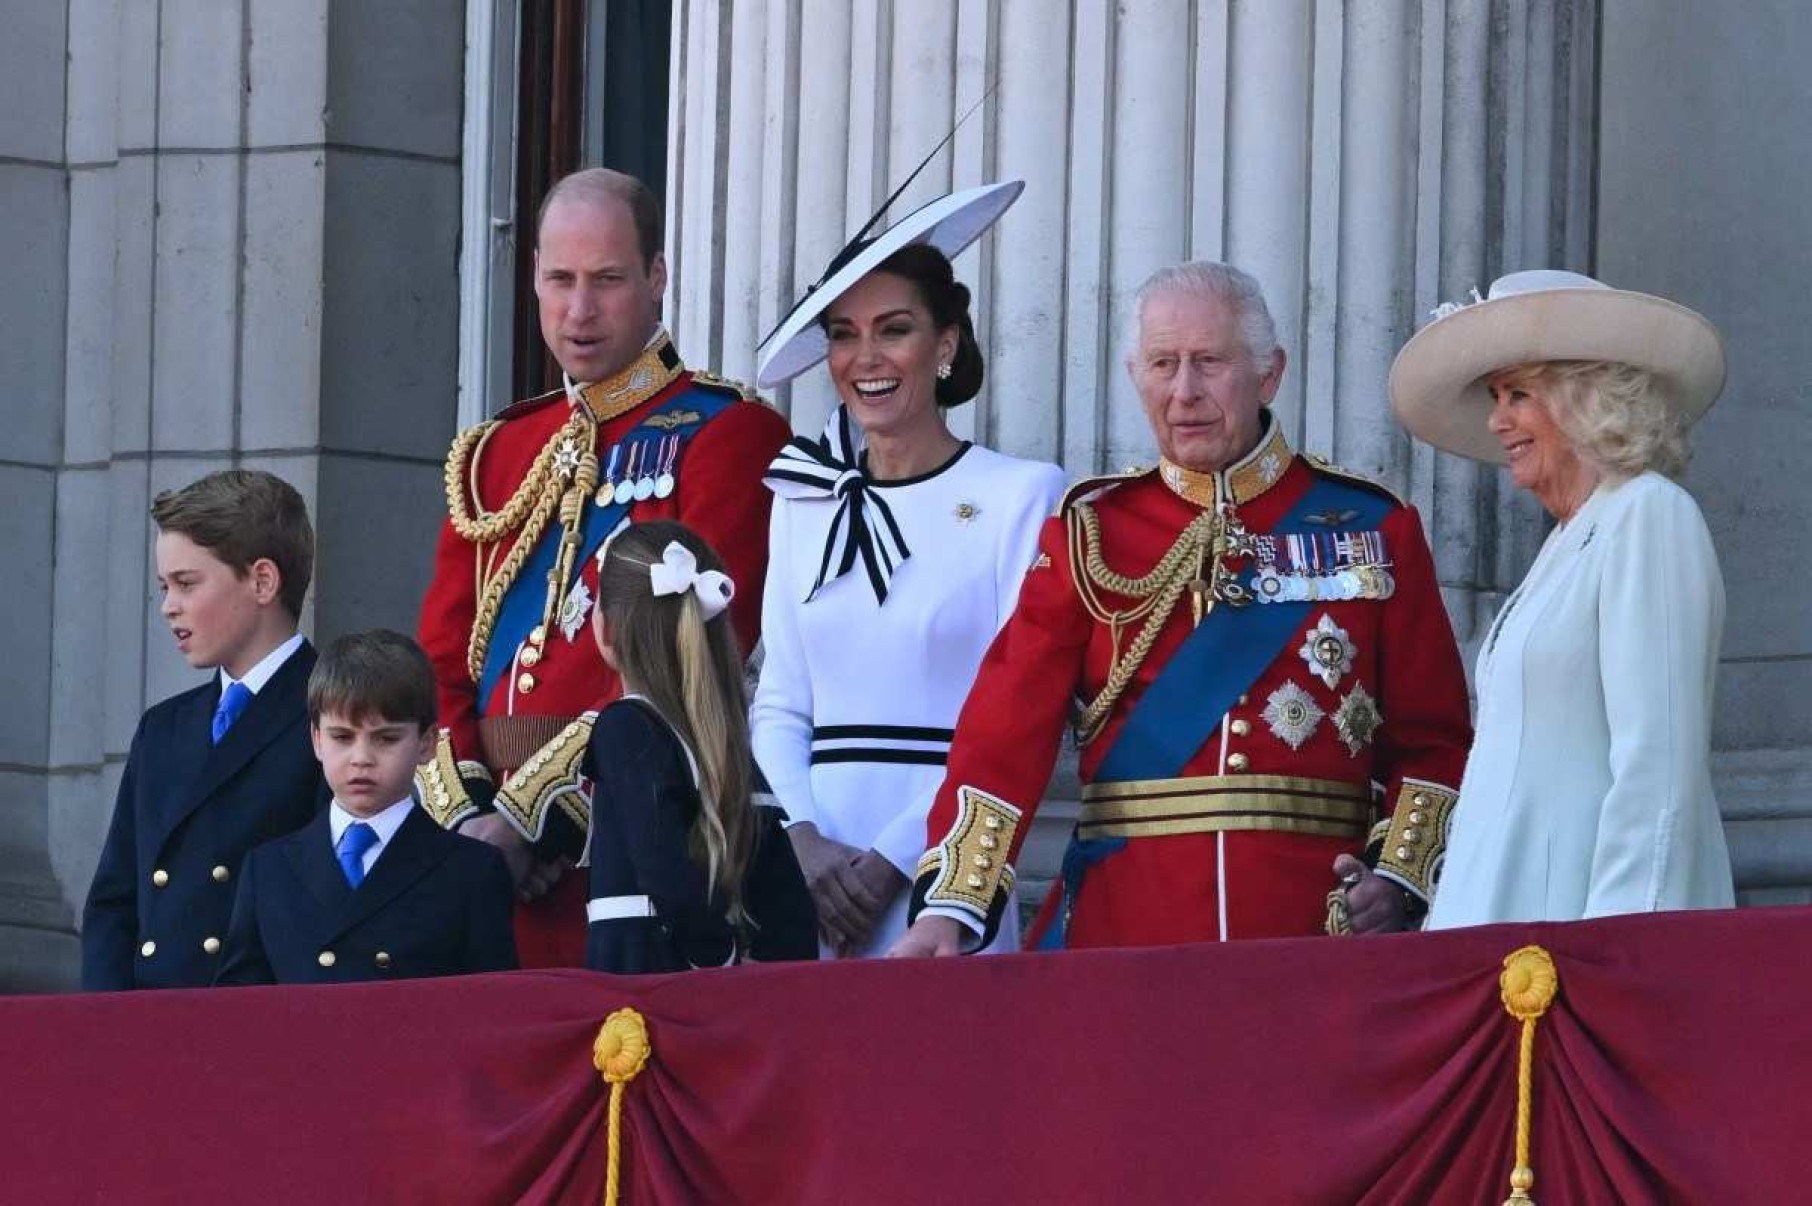 Kate, Princesa de Gales, está fazendo um retorno à vida pública pela primeira vez desde que foi diagnosticada com câncer, participando do desfile militar Trooping the Color no centro de Londres.